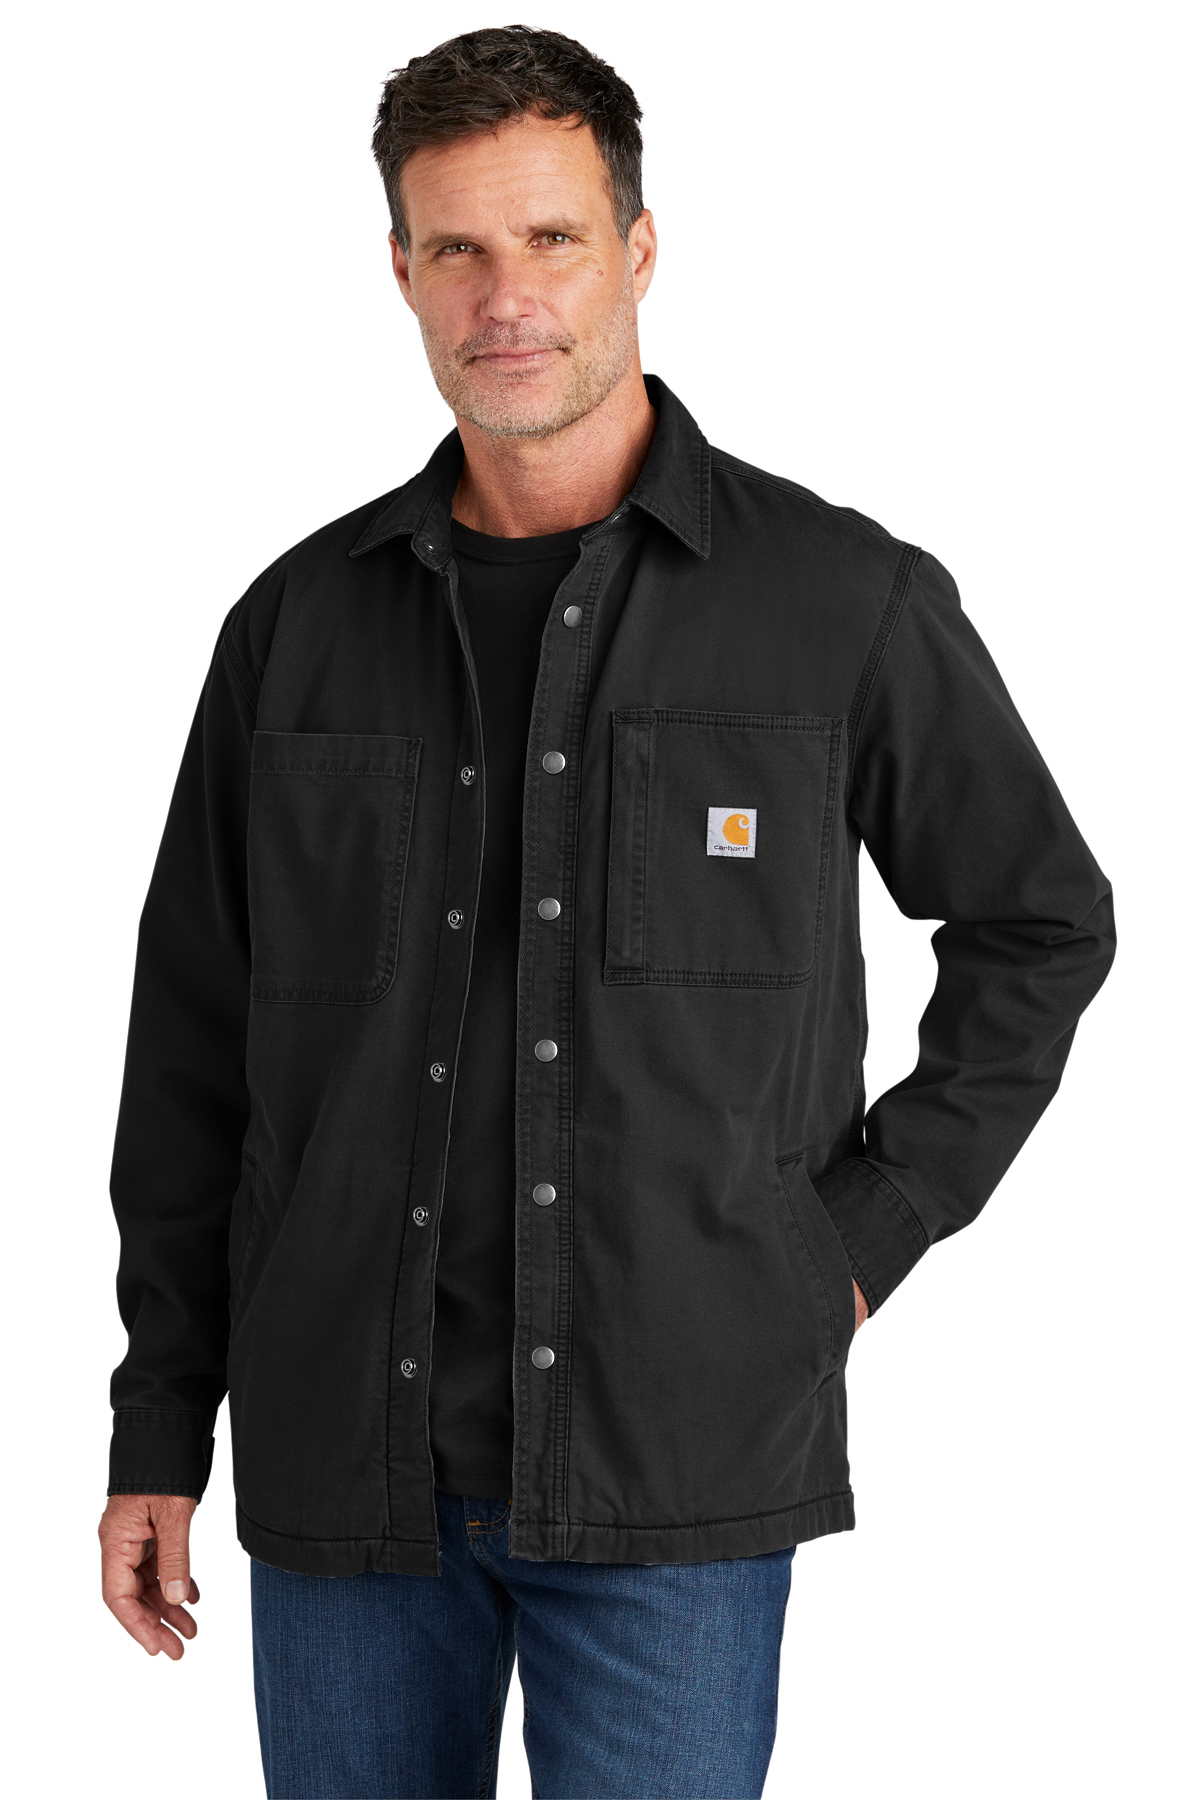 Carhartt Rugged Flex Fleece-Lined Shirt Jac | Product | SanMar